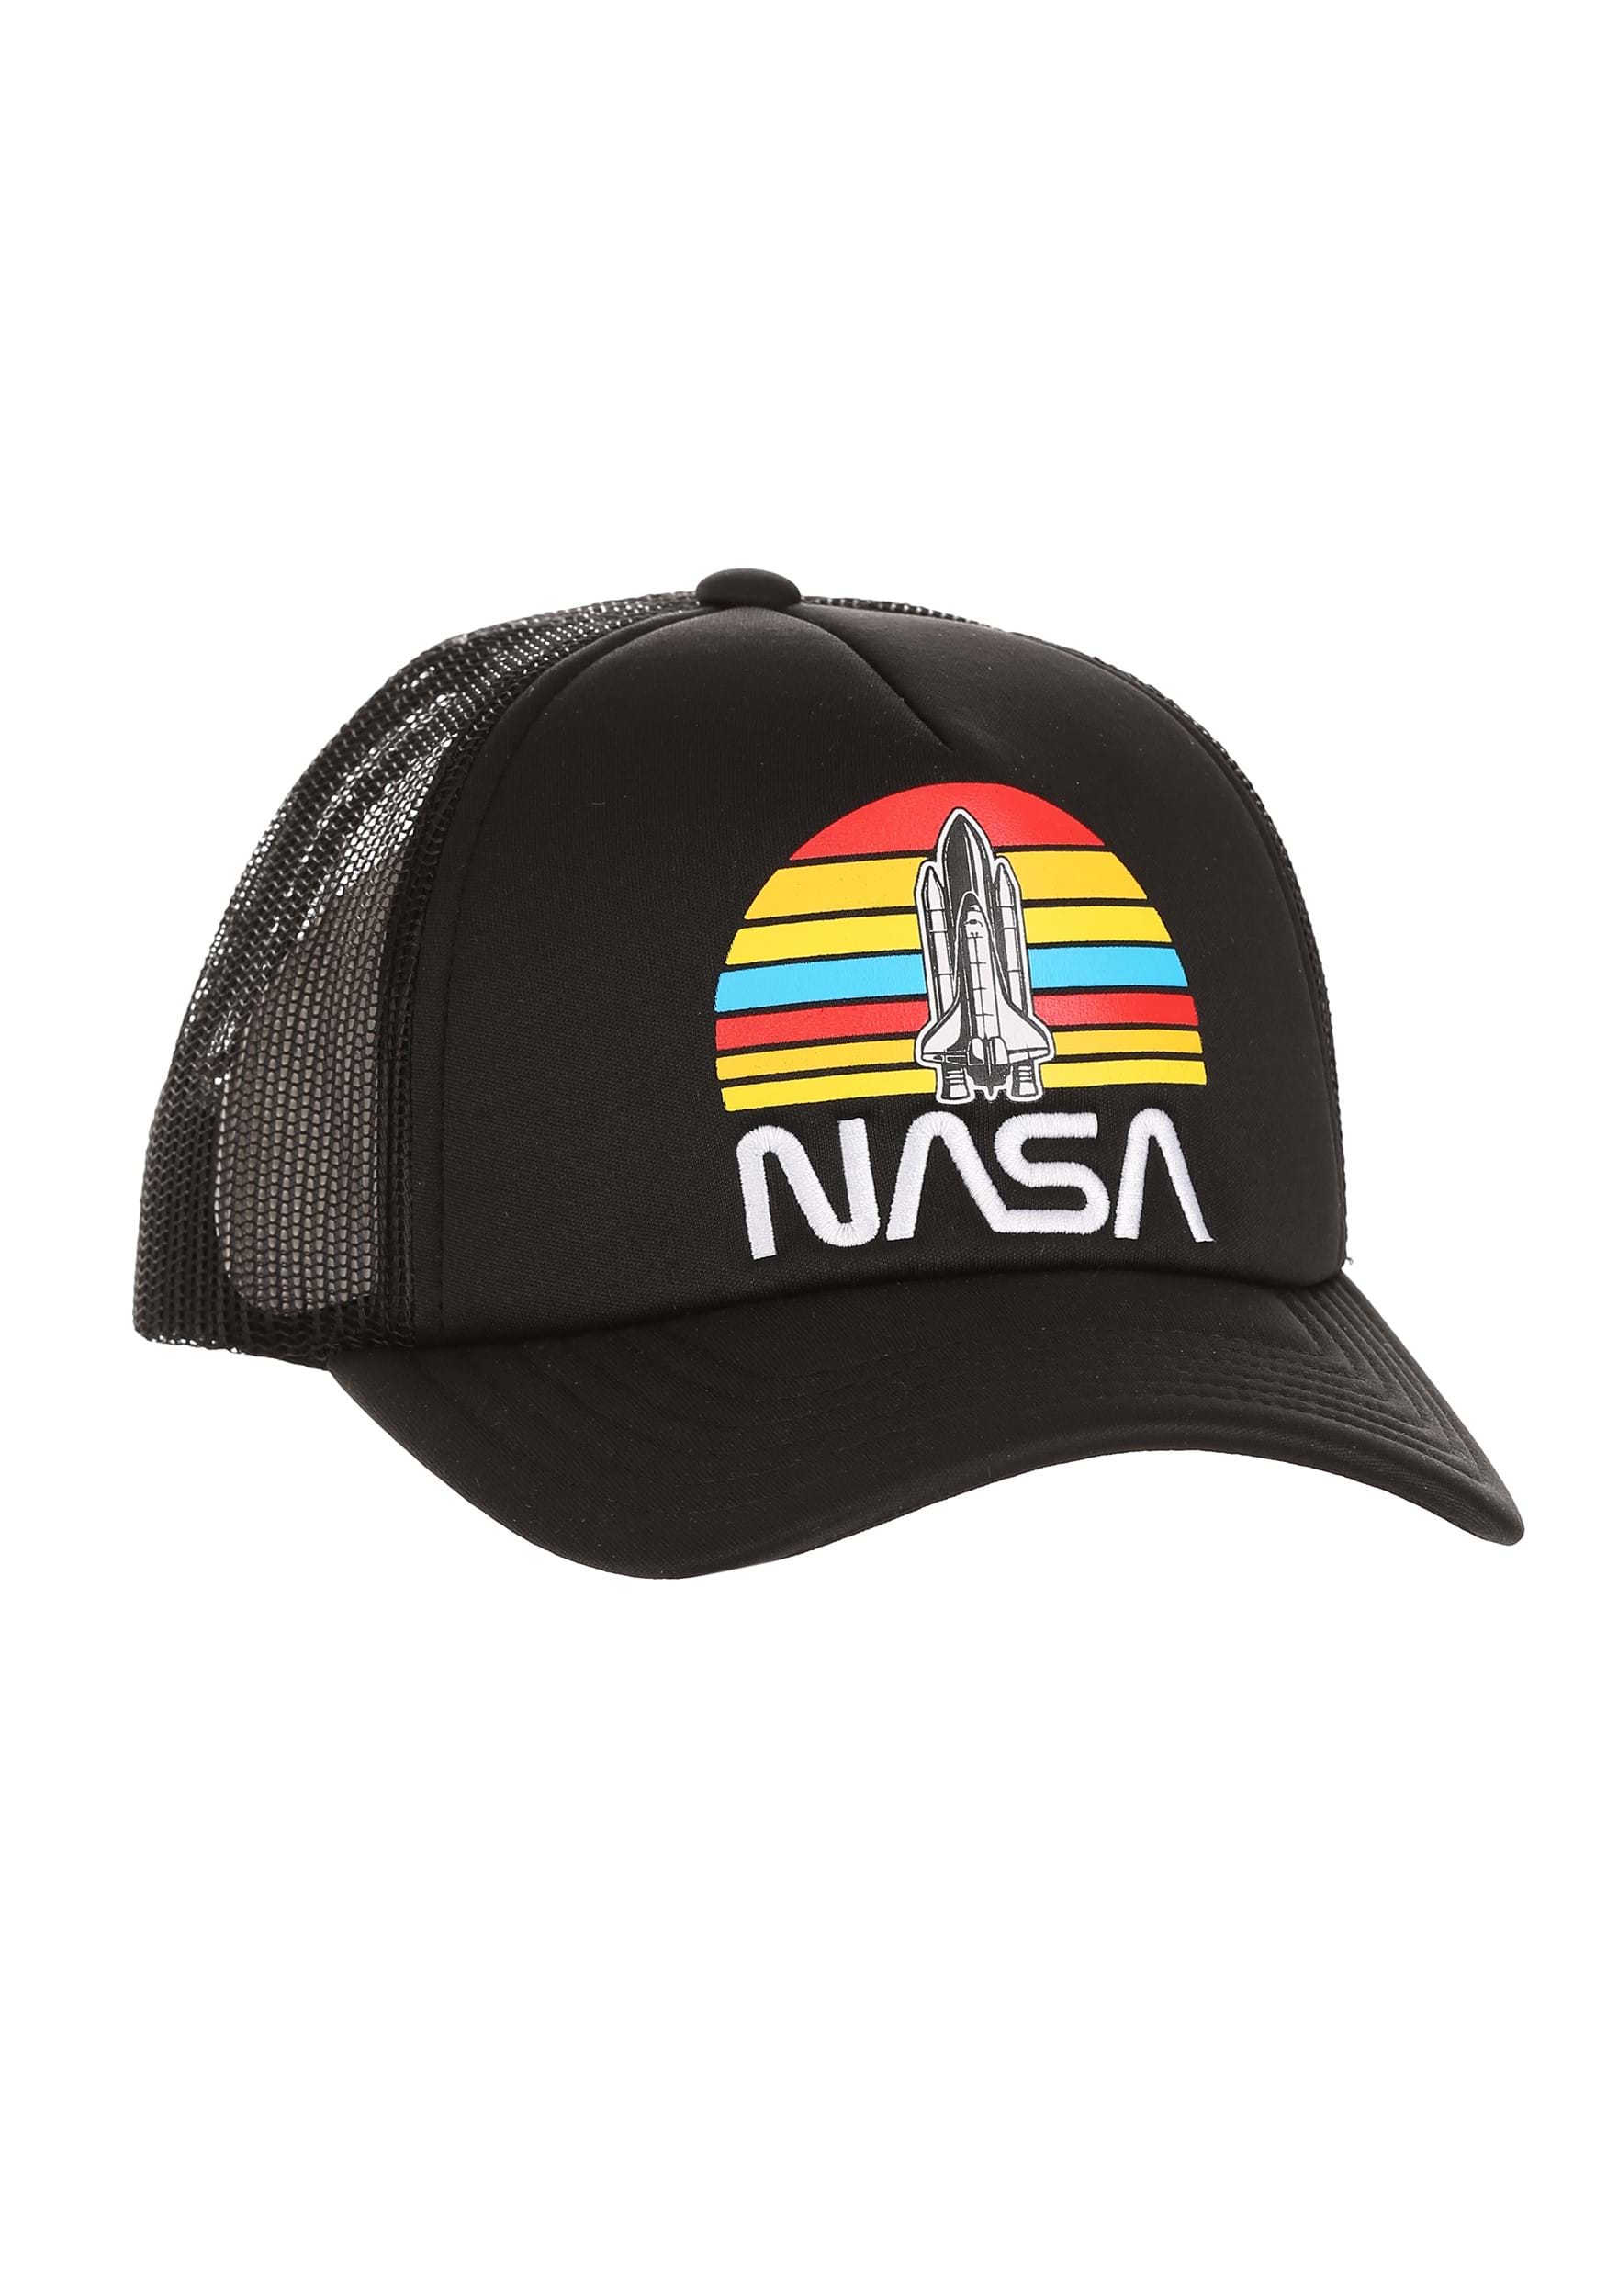 NASA Foam Trucker Hat